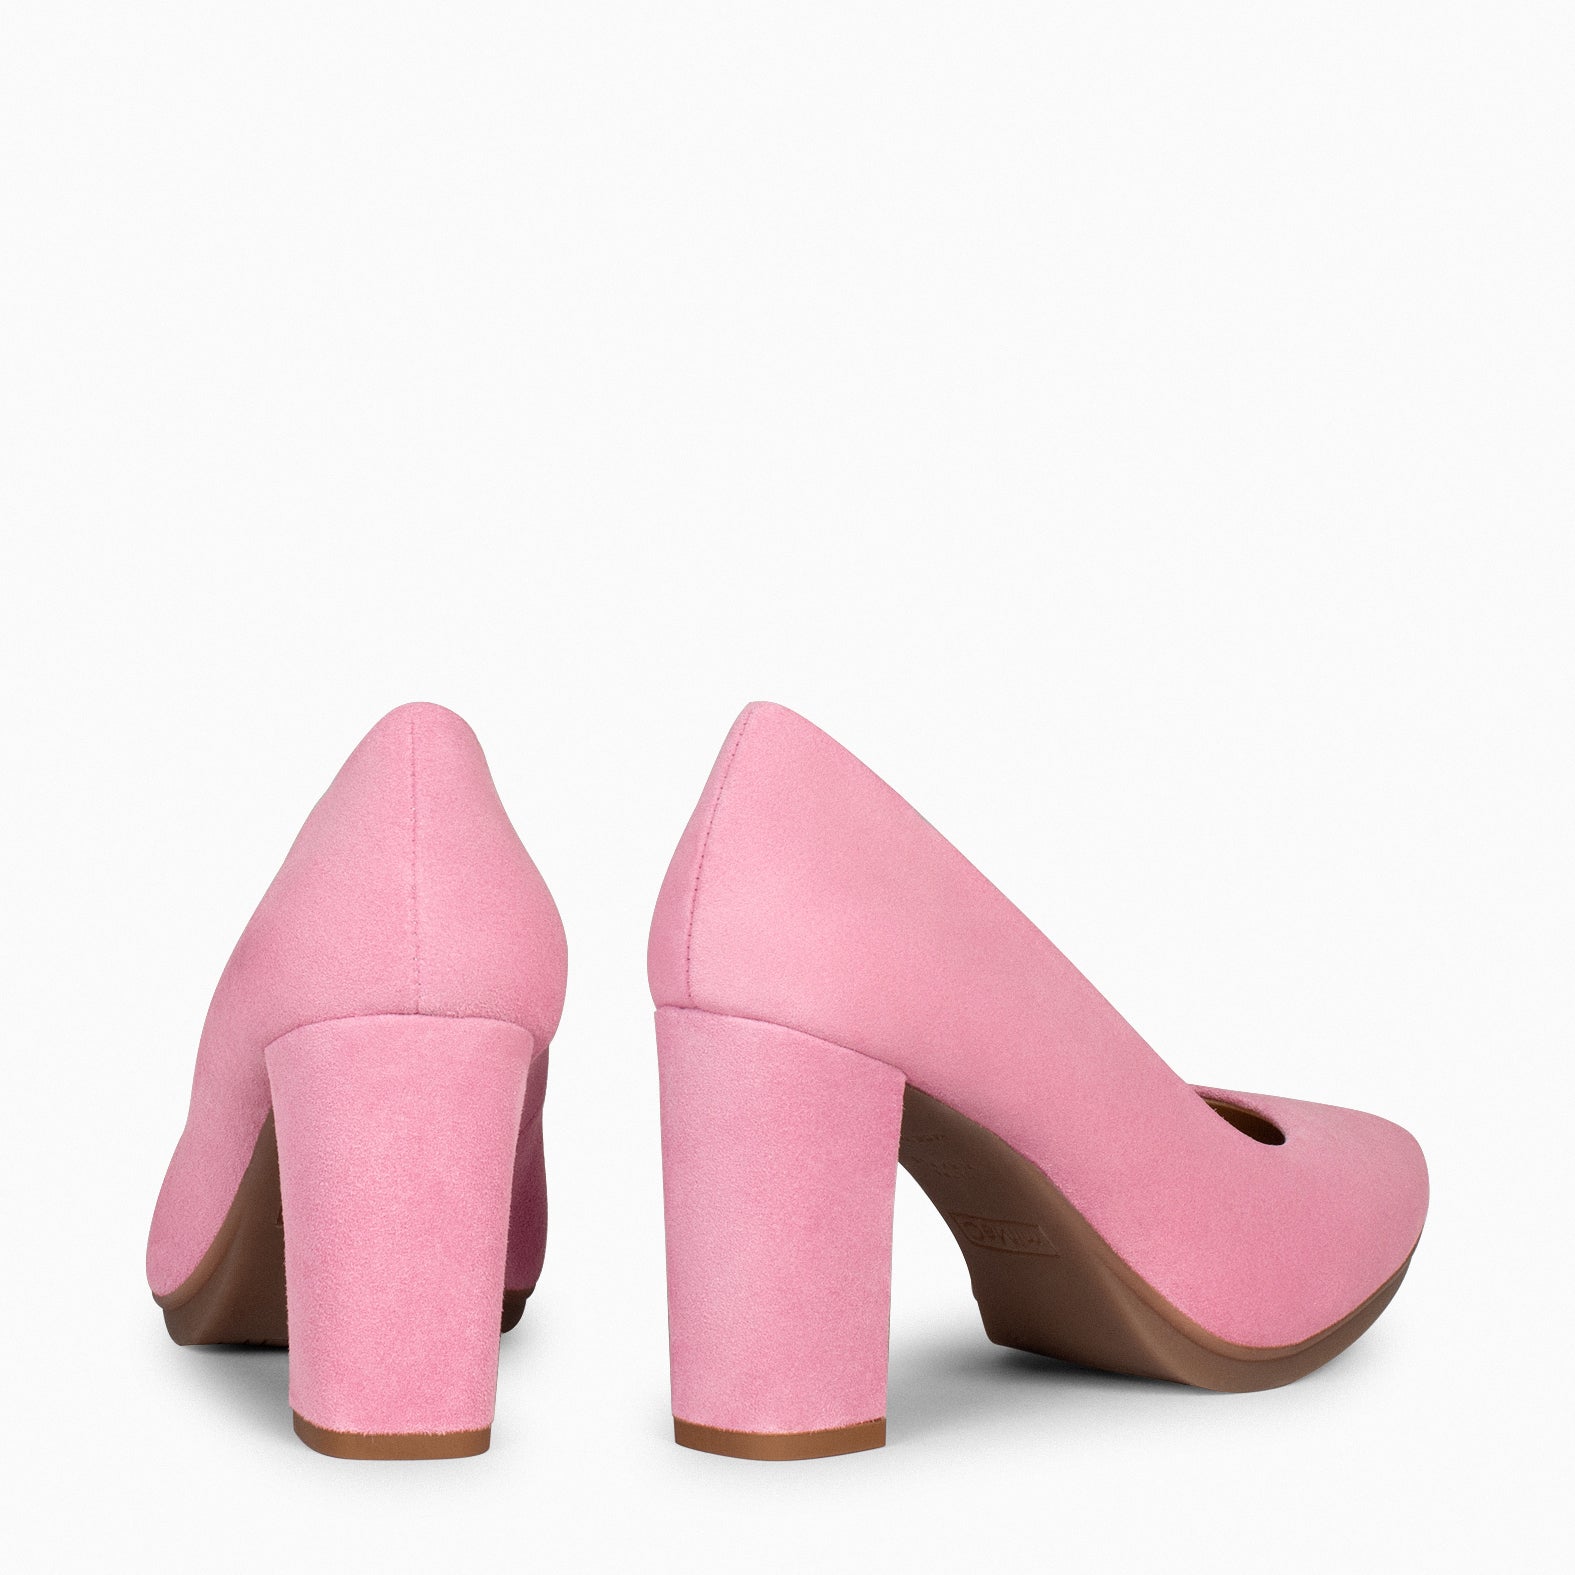 URBAN – Zapatos de tacón alto de ante ROSA CHICLE